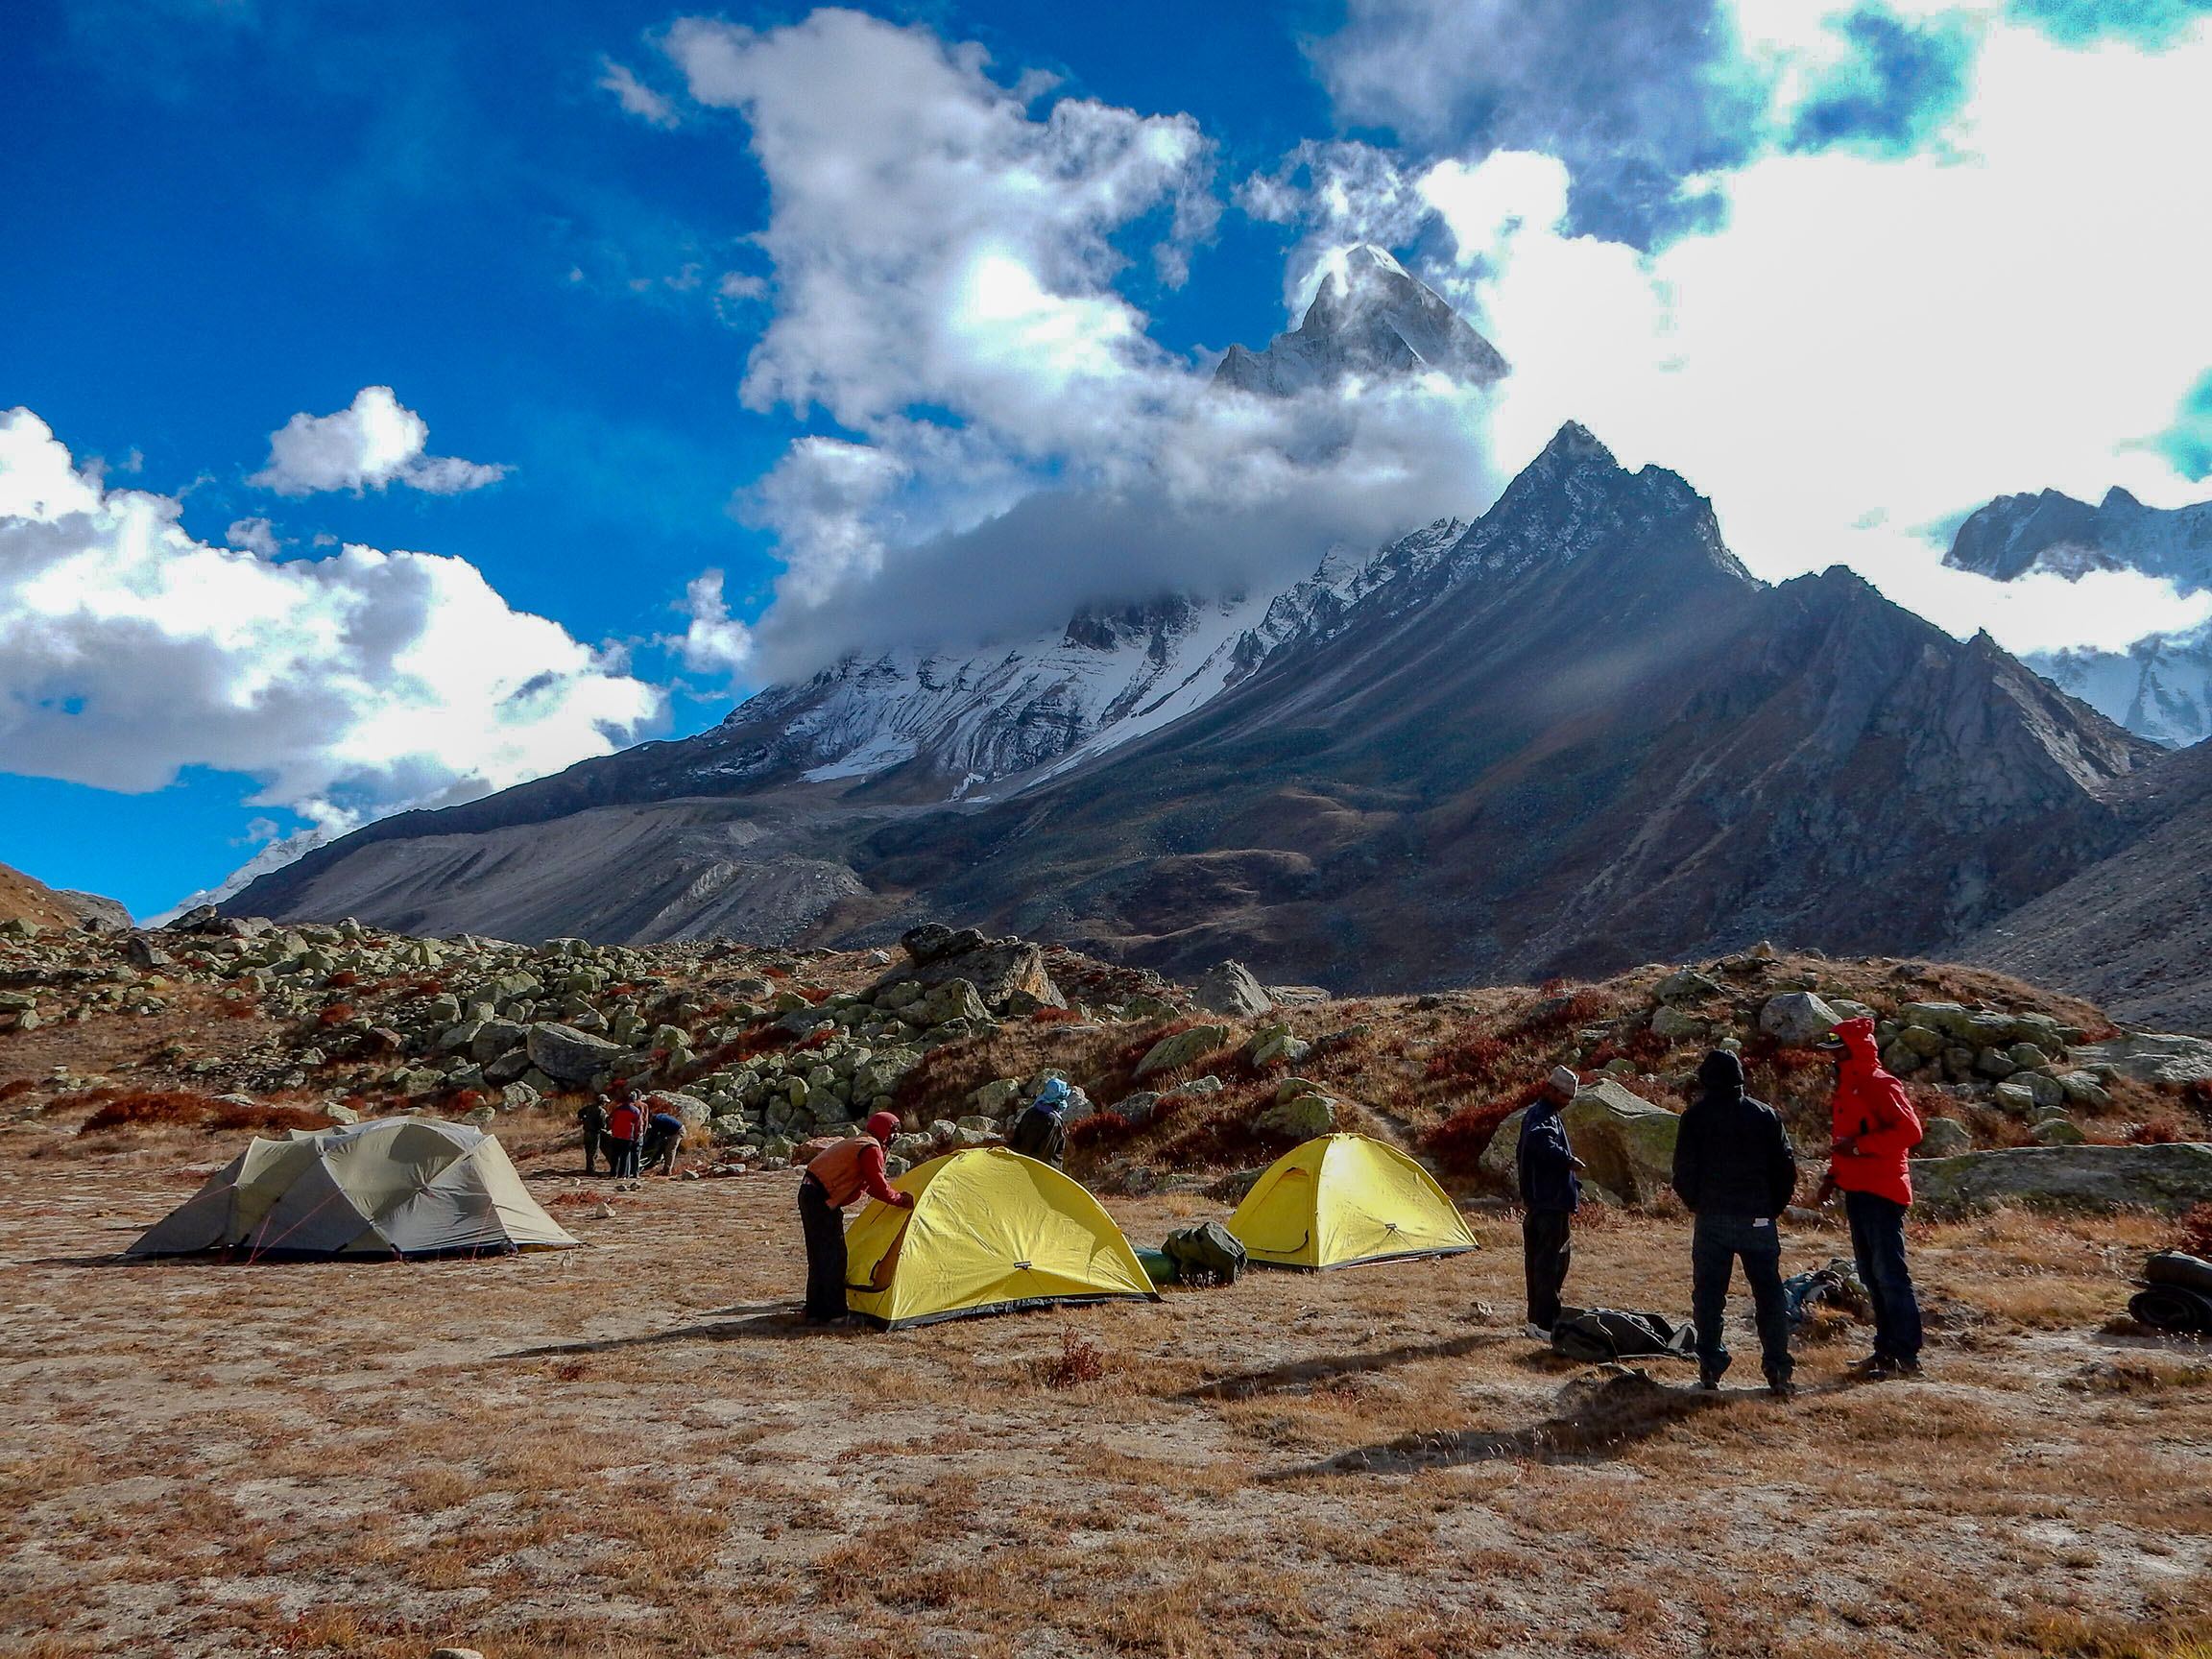 tapovan campsite - Himalayan Institute